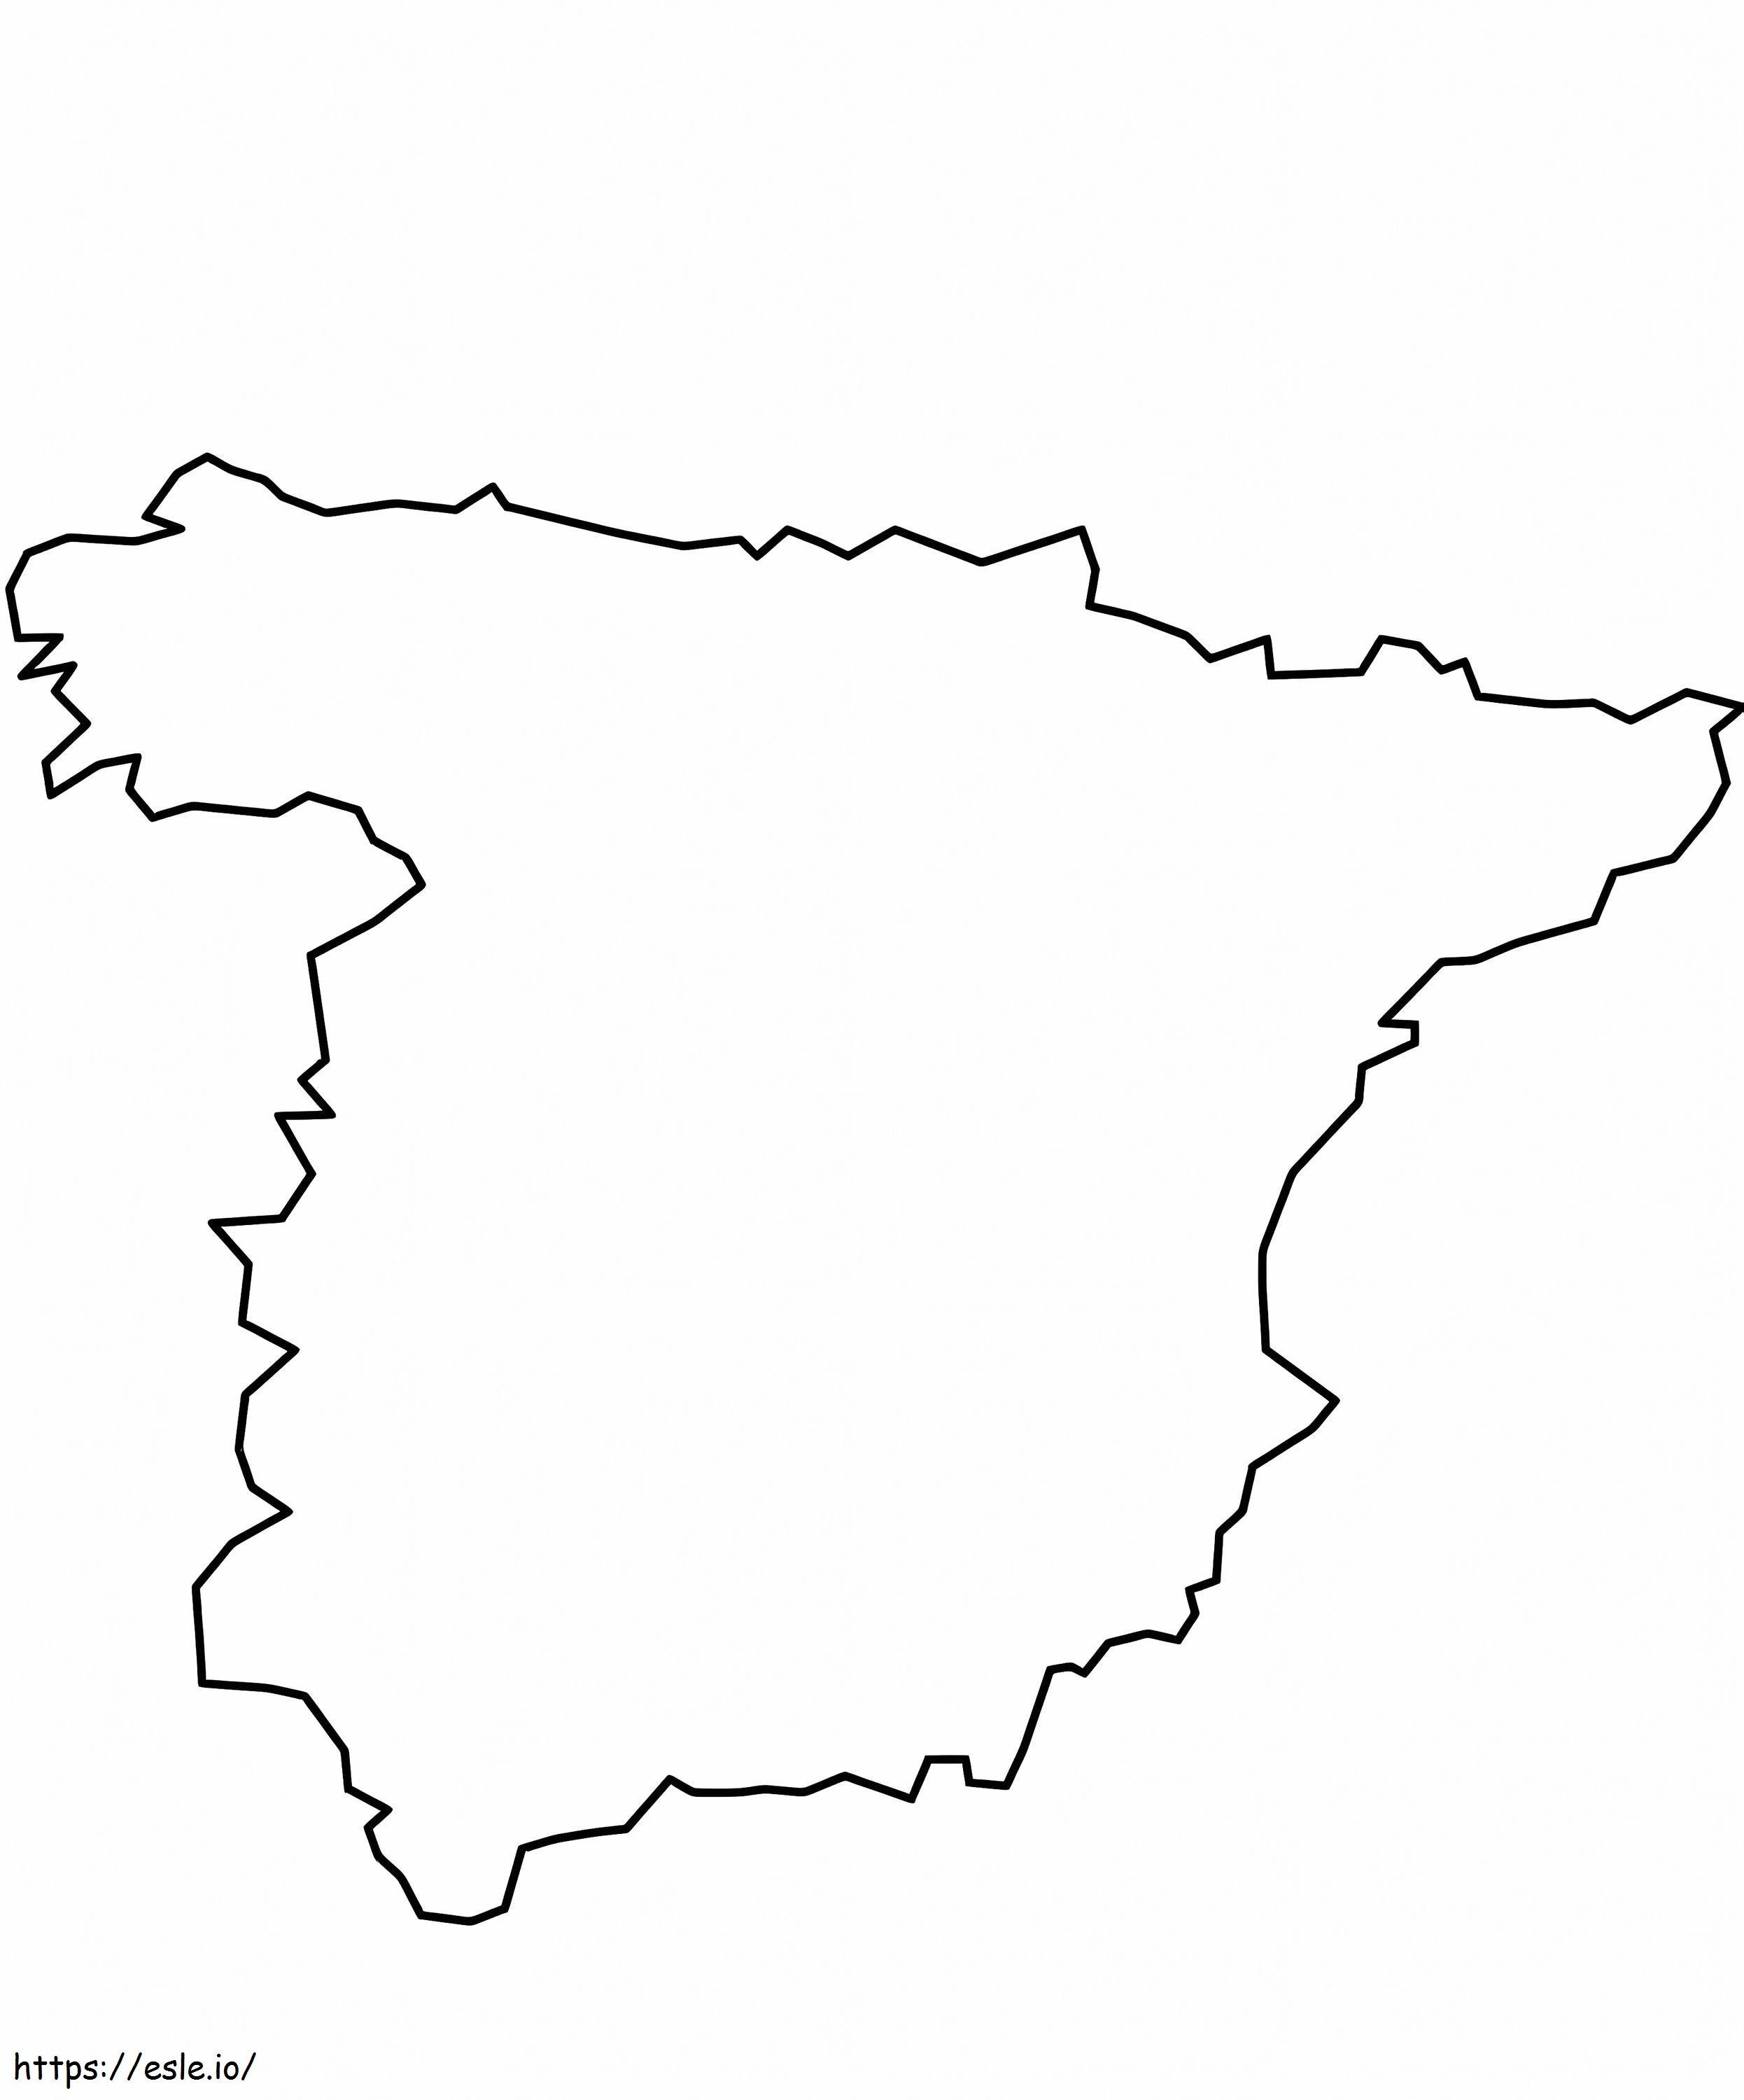 Coloriage Carte muette de l'Espagne à imprimer dessin